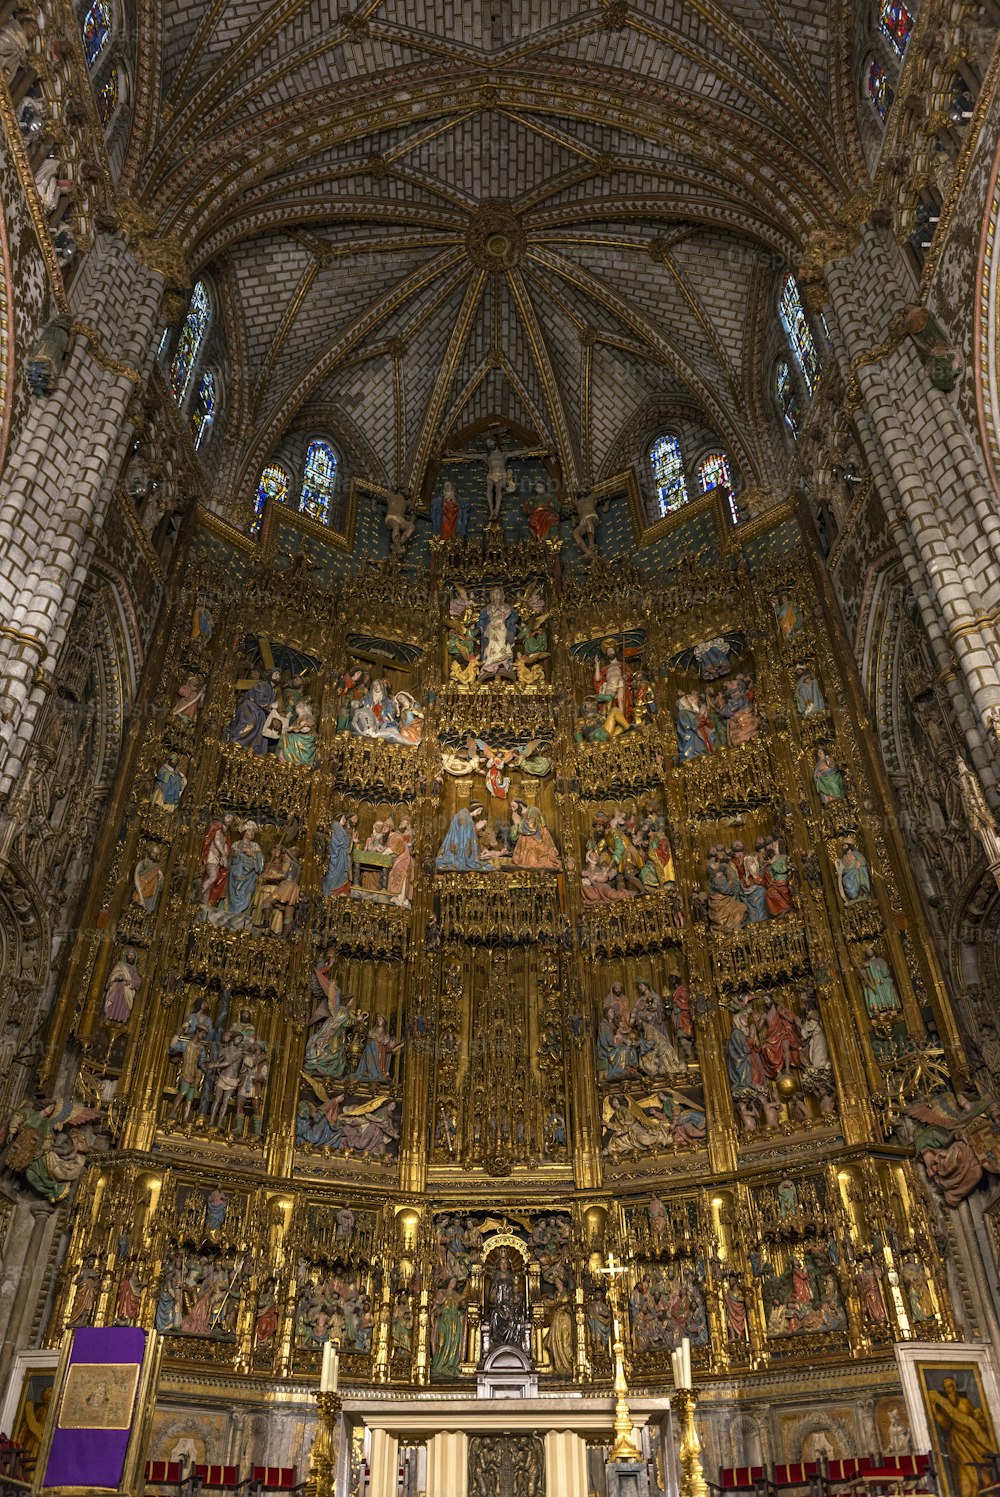 Vue intérieure du retable et du maître-autel de la cathédrale de Tolède (cathédrale primat de Sainte-Marie de Tolède), un retable gothique extrêmement fleuri et l’un des derniers exemples de ce style artistique. La cathédrale de Tolède est l’une des trois cathédrales gothiques du XIIIe siècle en Espagne et est considérée comme l’œuvre maîtresse du style gothique en Espagne.